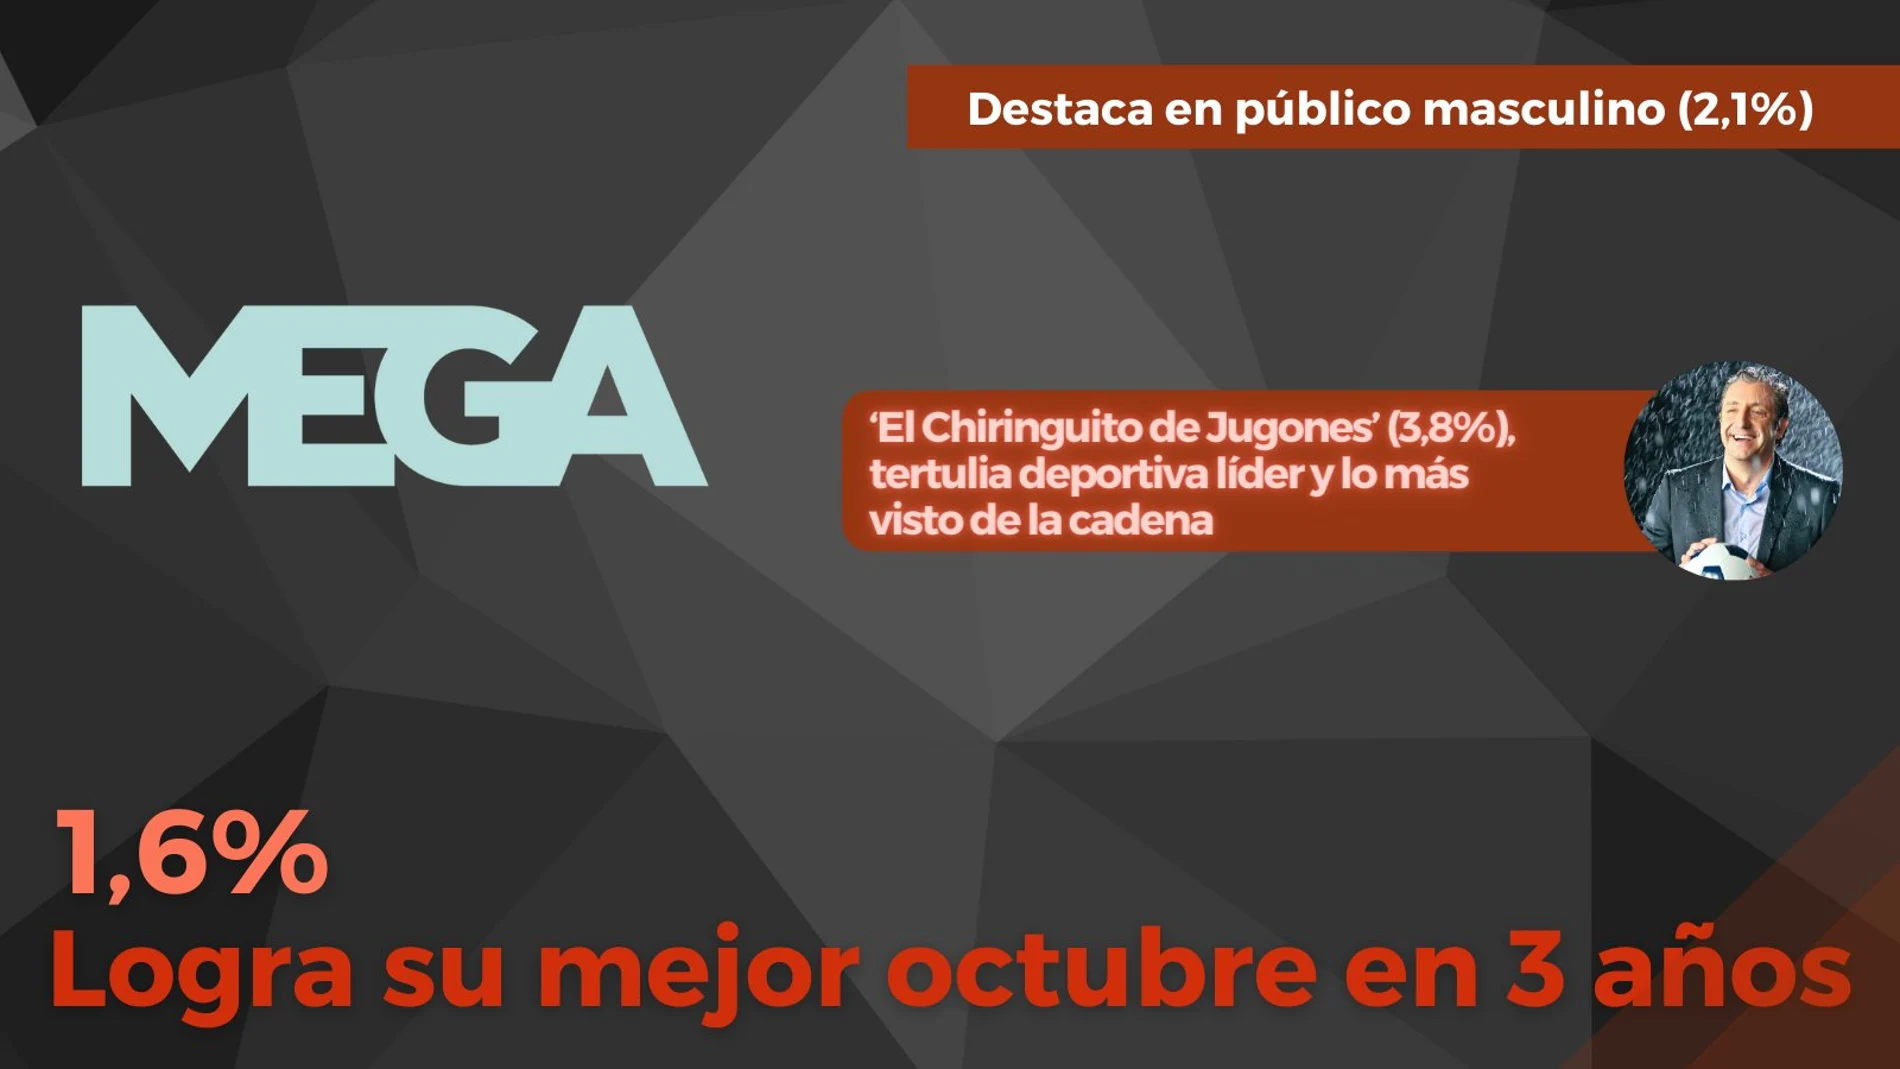 Mega (1,6%) firma su mejor octubre en 3 años. El Chiringuito de Jugones sigue como lo más visto del canal